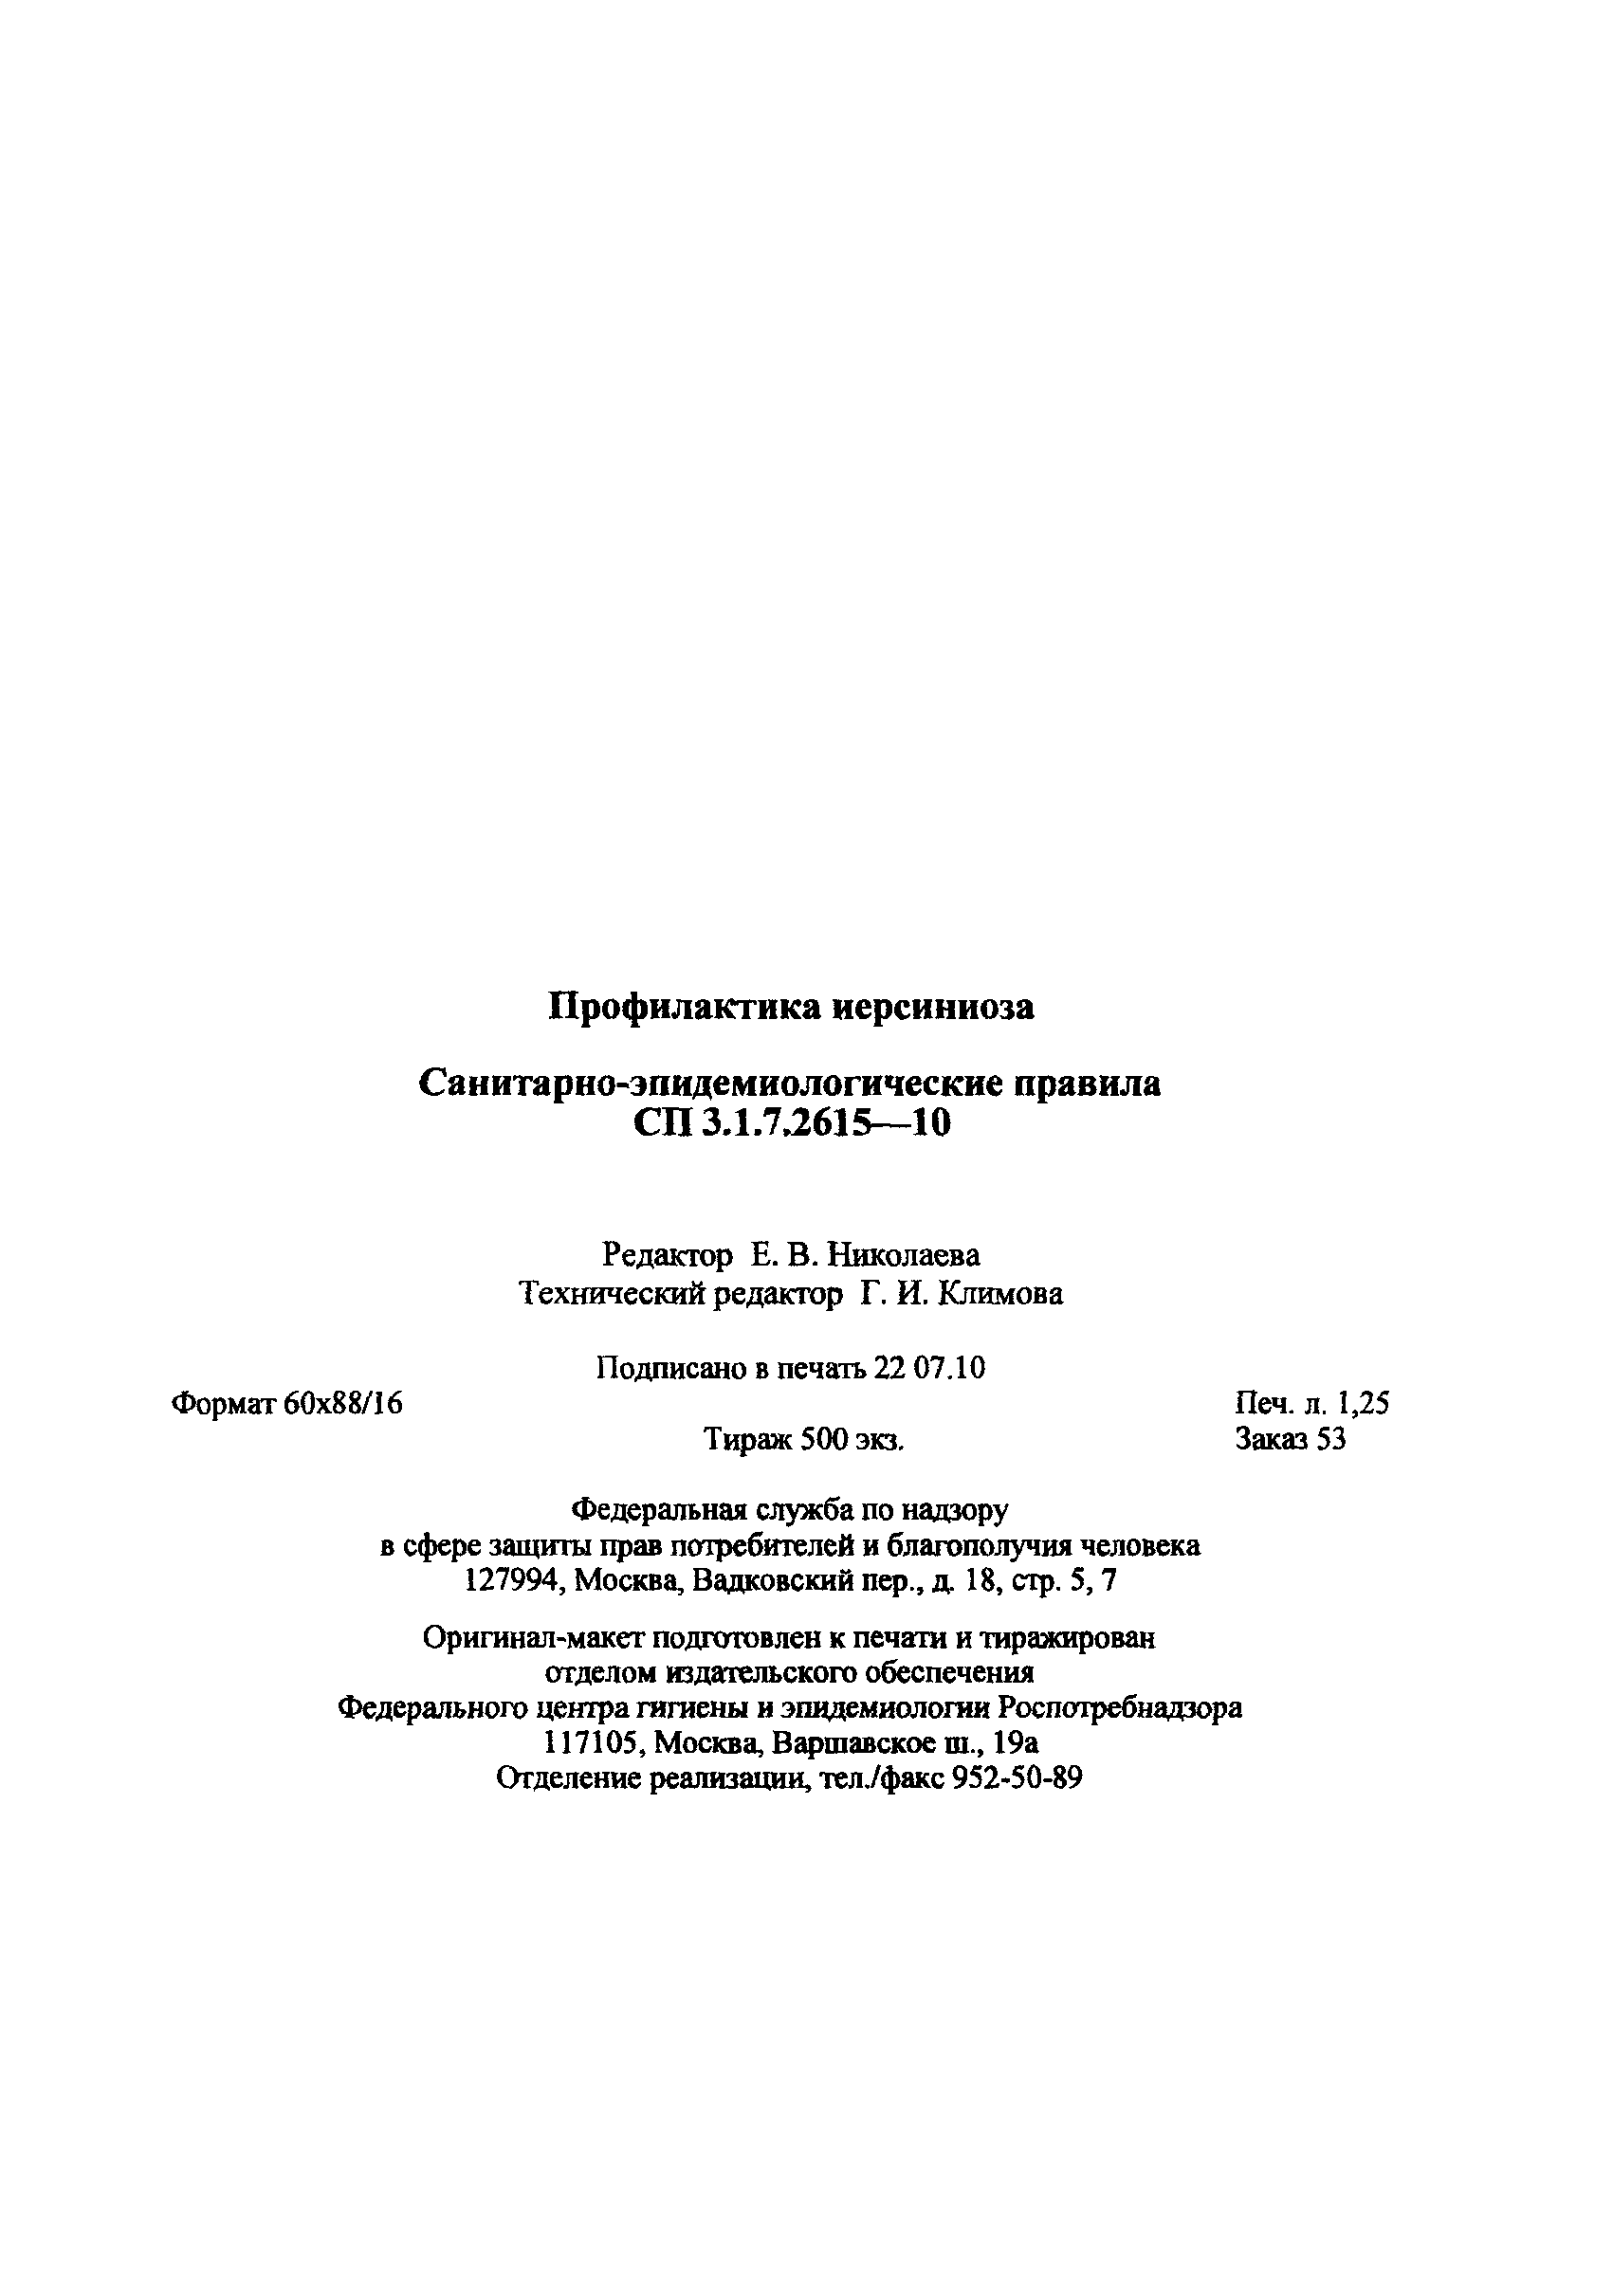 СП 3.1.7.2615-10